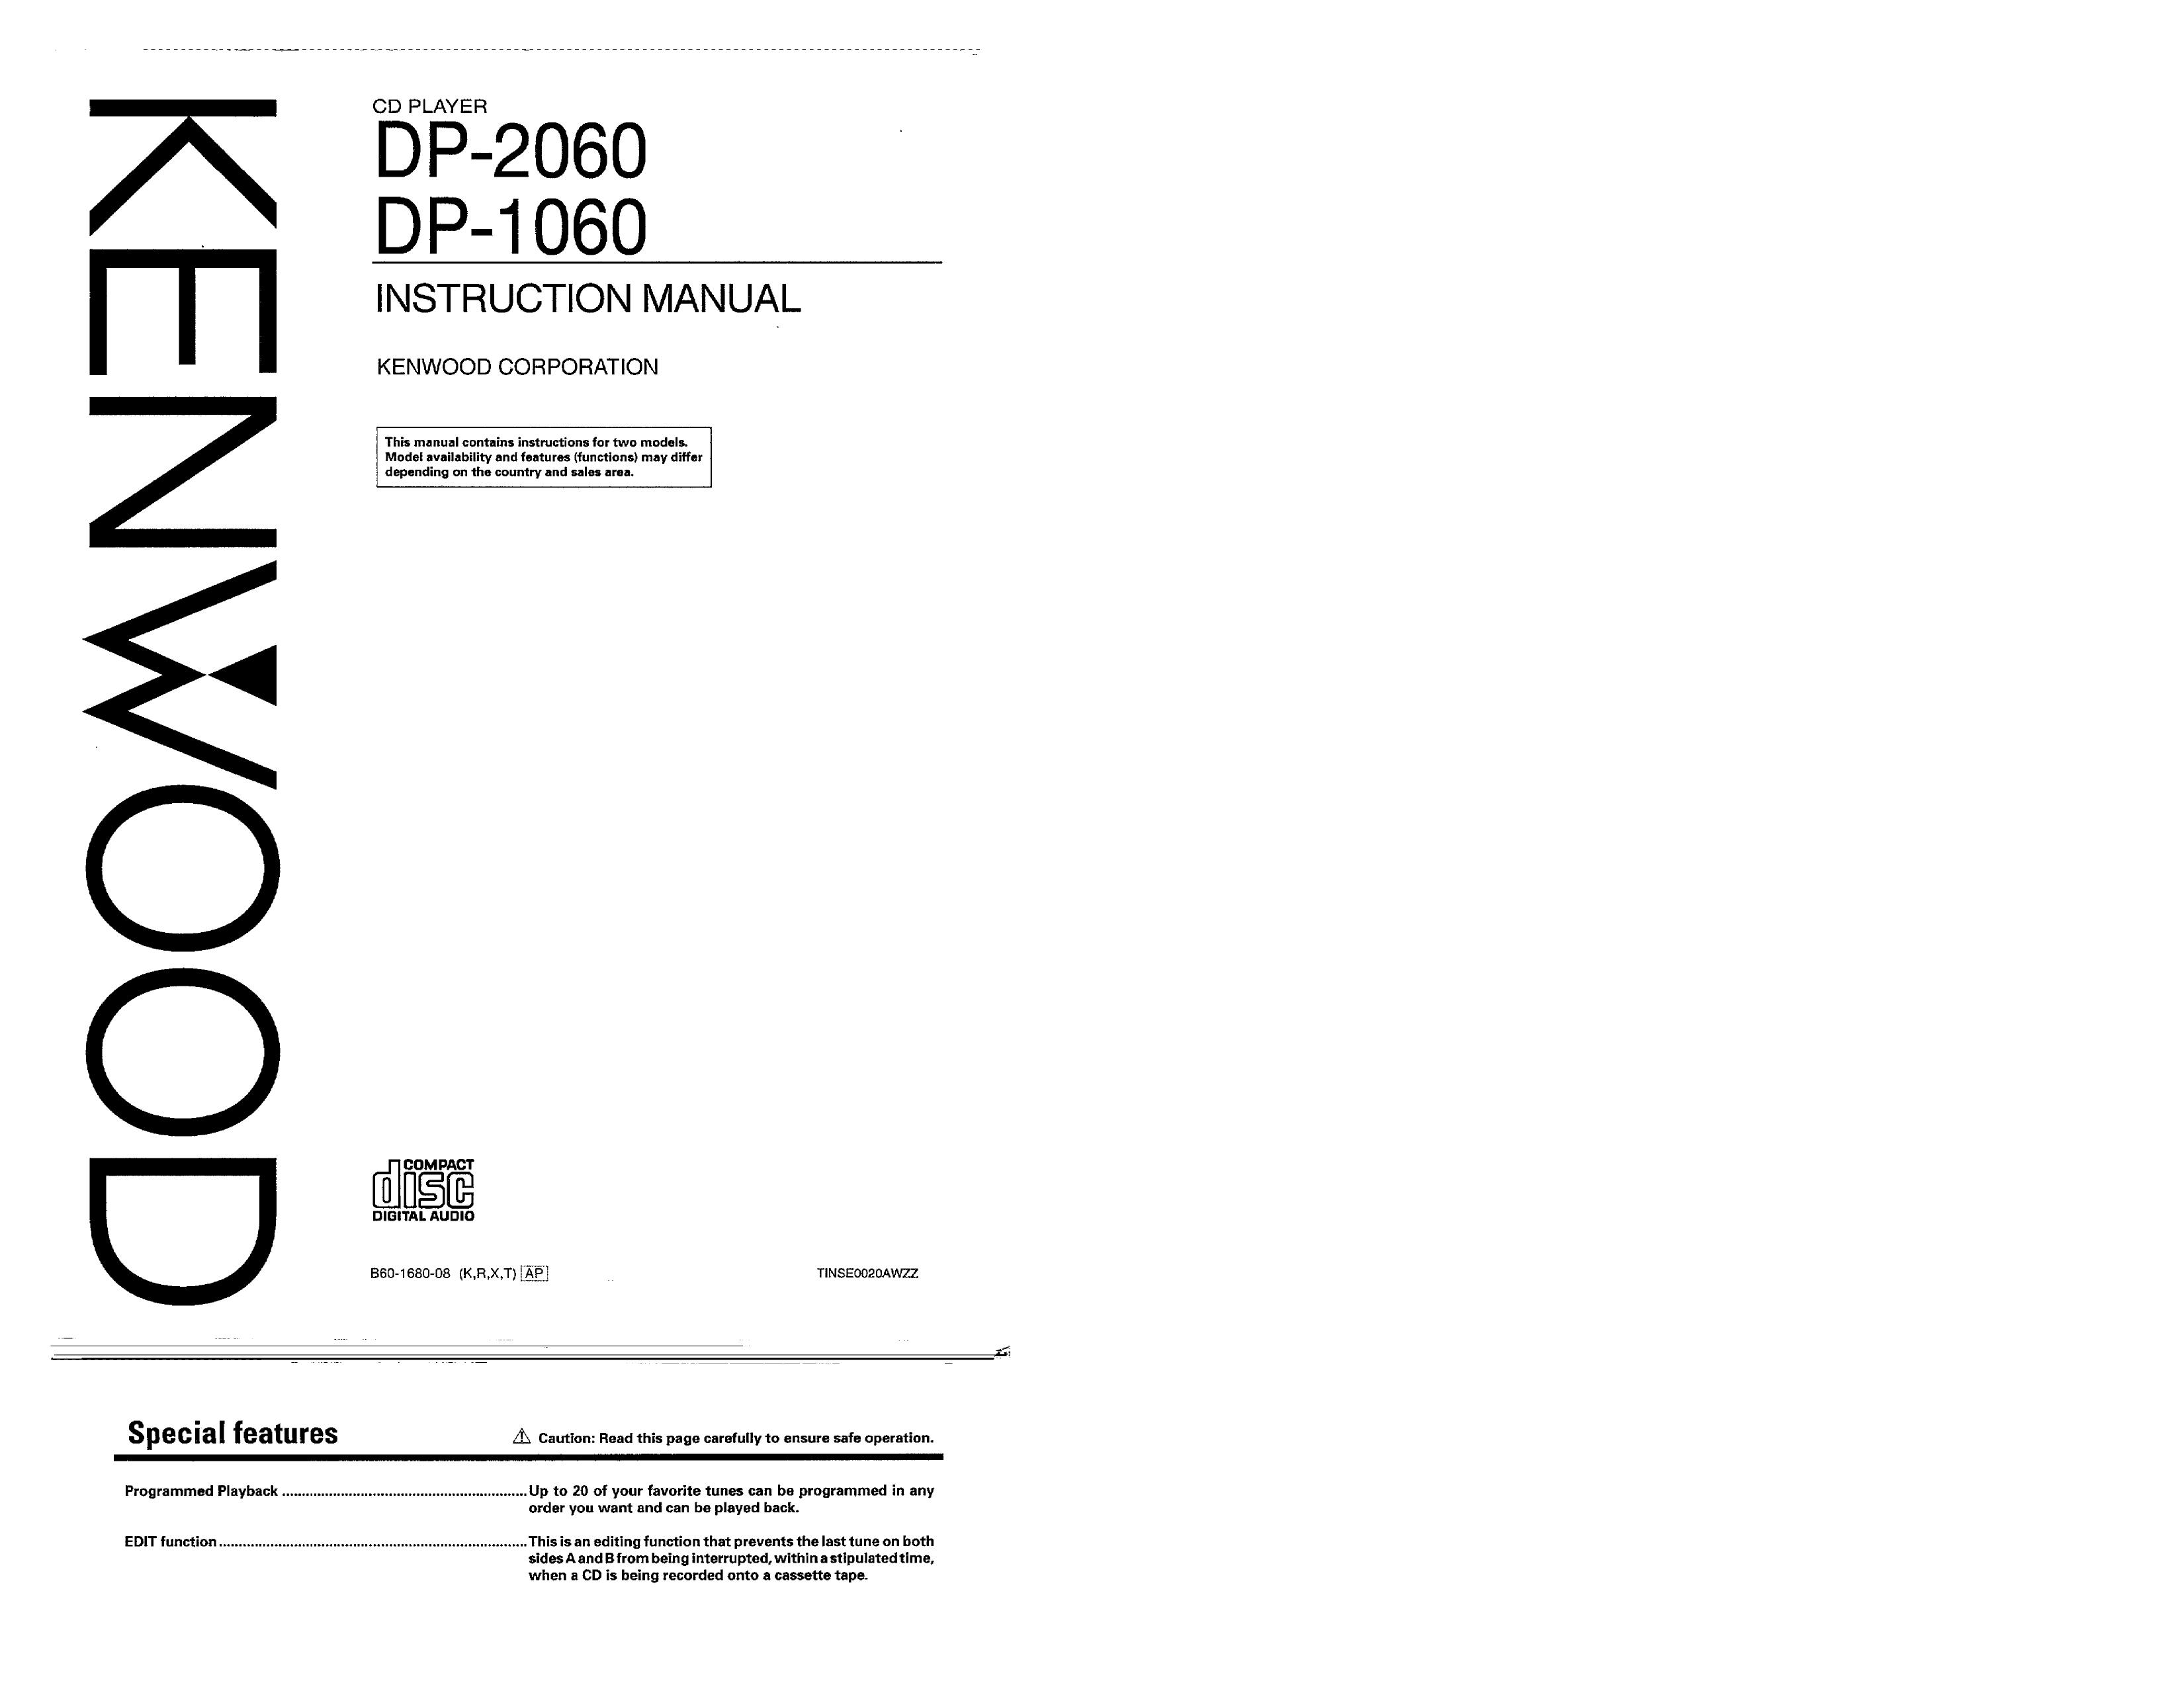 Kenwood DP-1060 Digital Camera User Manual